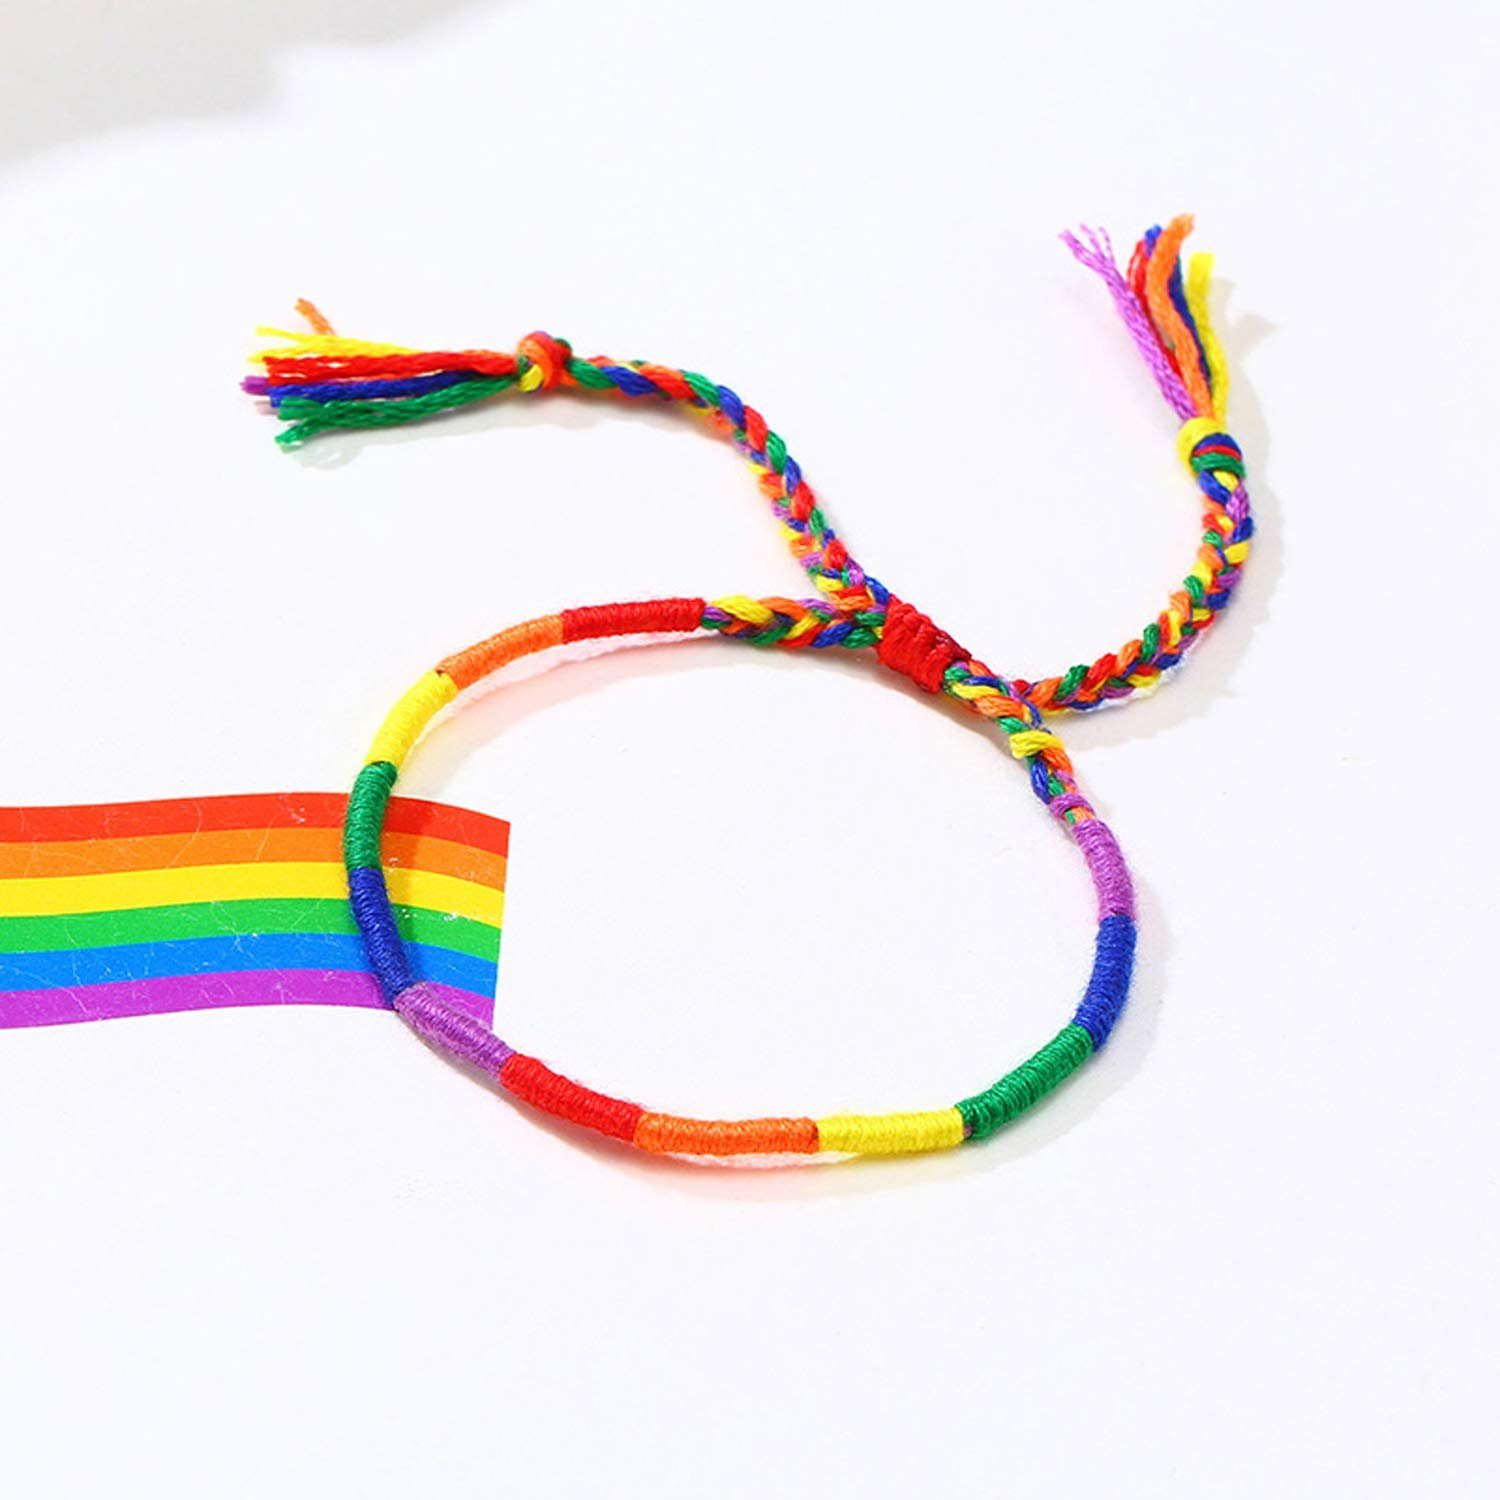 Haiaveng Freundschaftsarmband 2Pcs Gewebtes Armbänder, Seil Regenbogen Freundschaftsarmband LGBTQ einstellbar geflochtenes